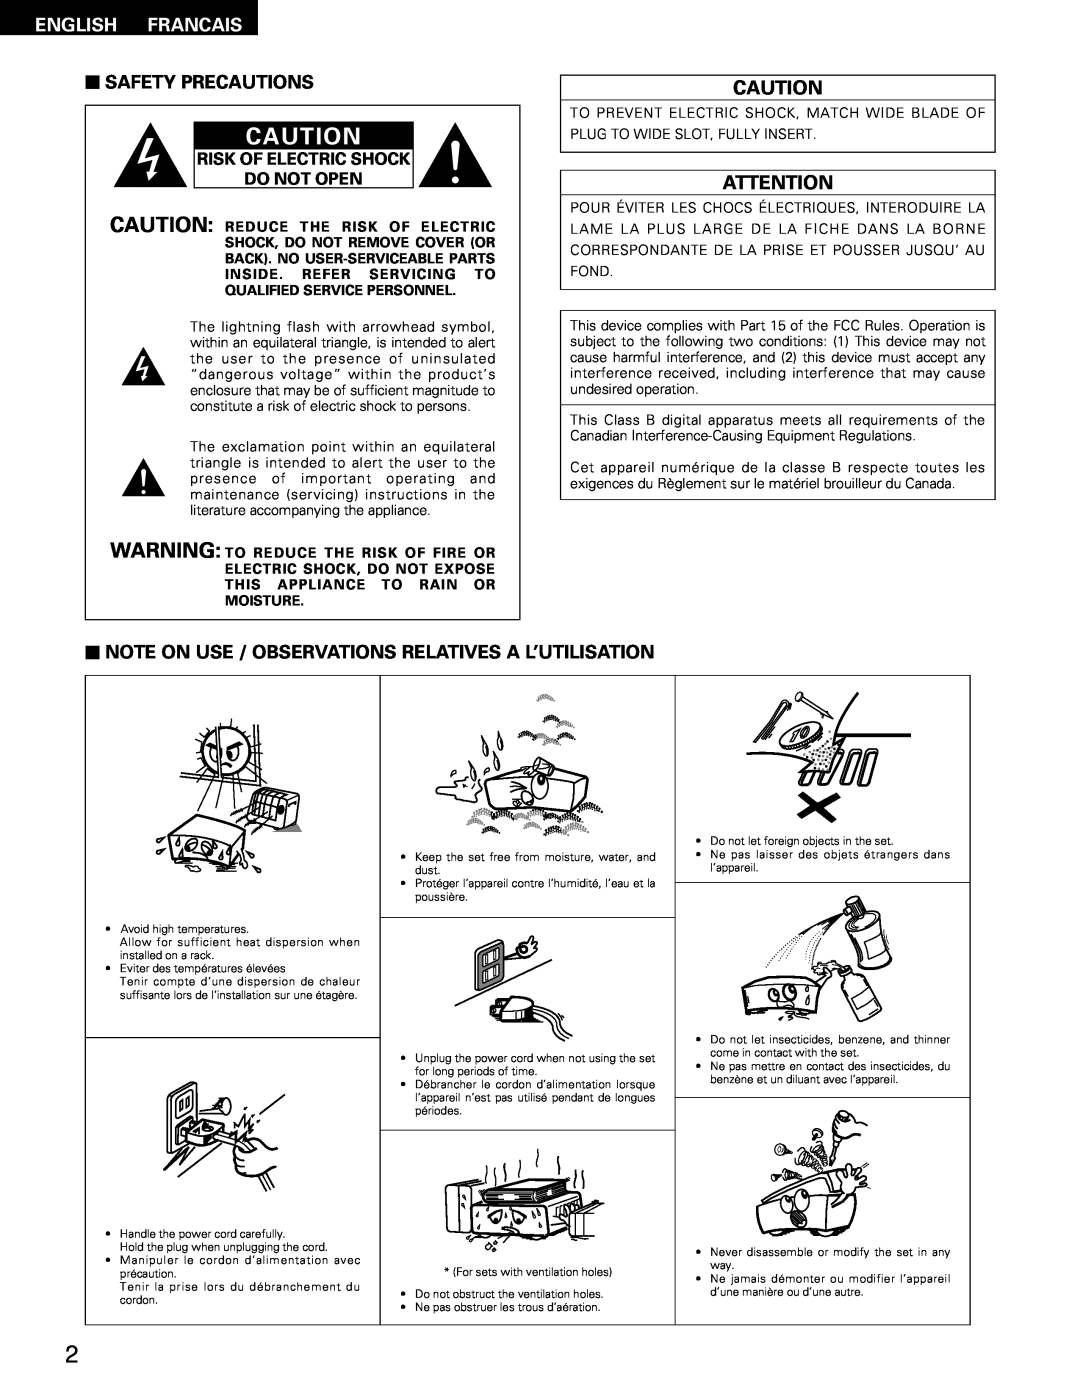 Denon DRA-685 manual English Francais, Safety Precautions, Risk Of Electric Shock Do Not Open 